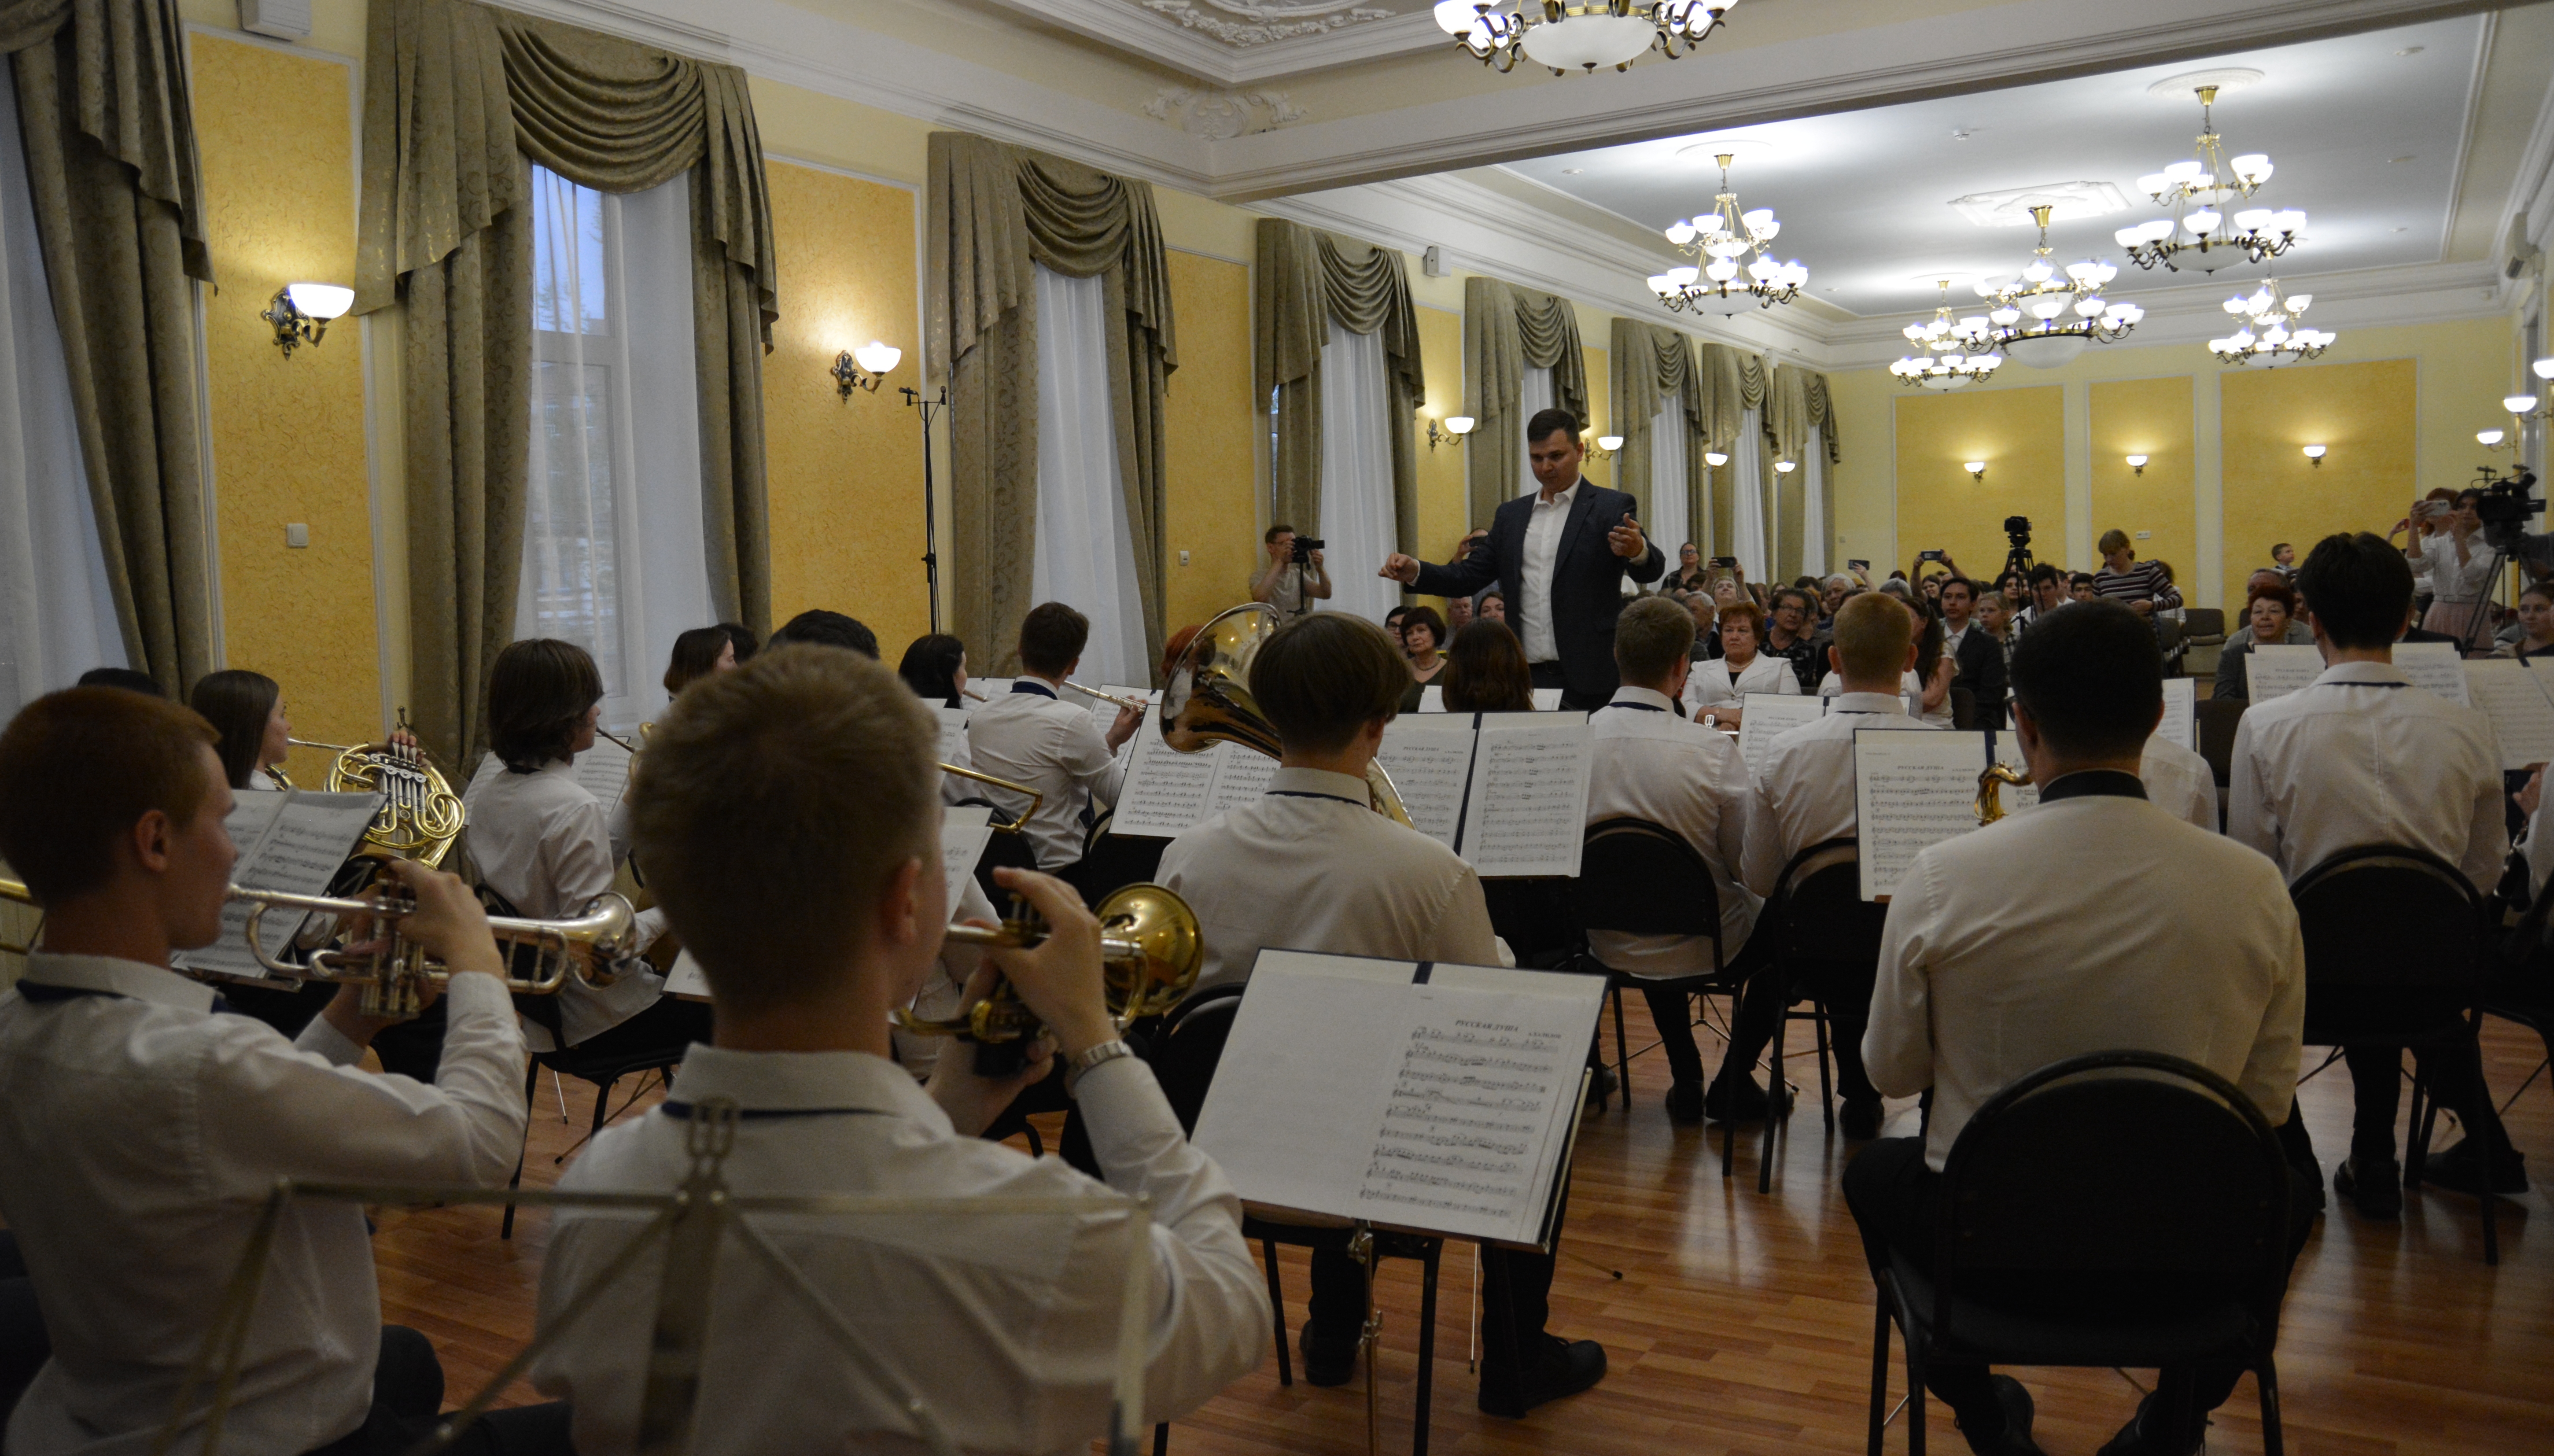 Духовой оркестр Саратовского областного колледжа искусств вызвал бурю оваций